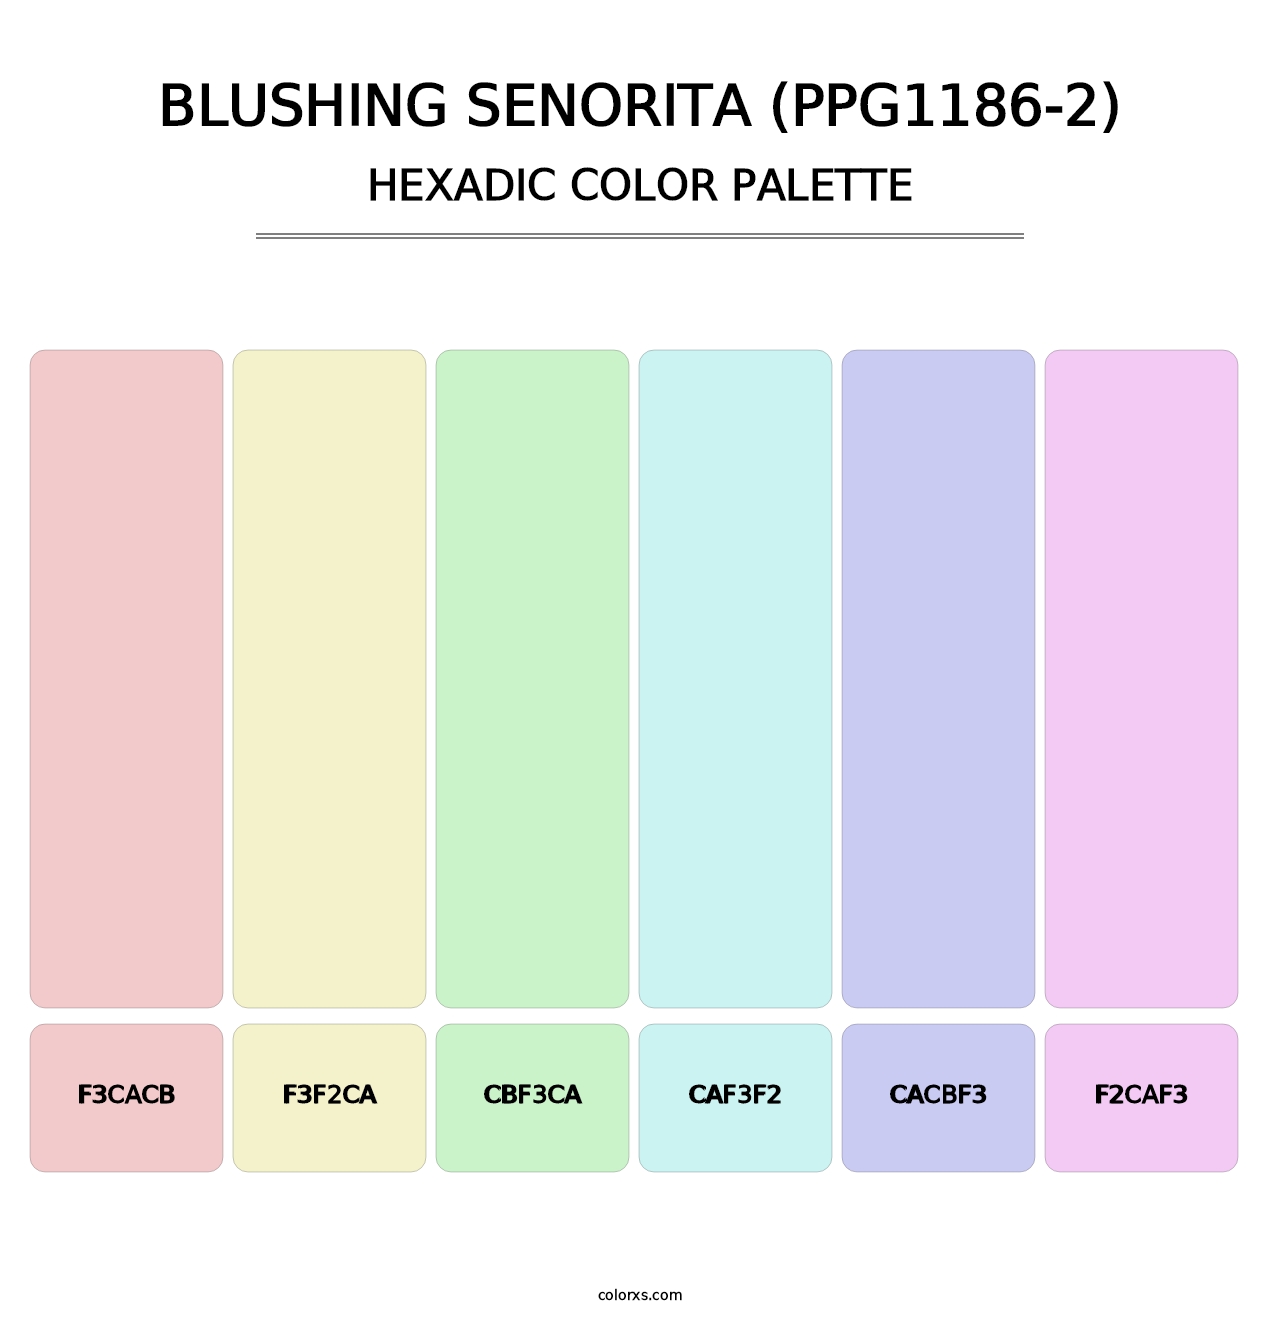 Blushing Senorita (PPG1186-2) - Hexadic Color Palette